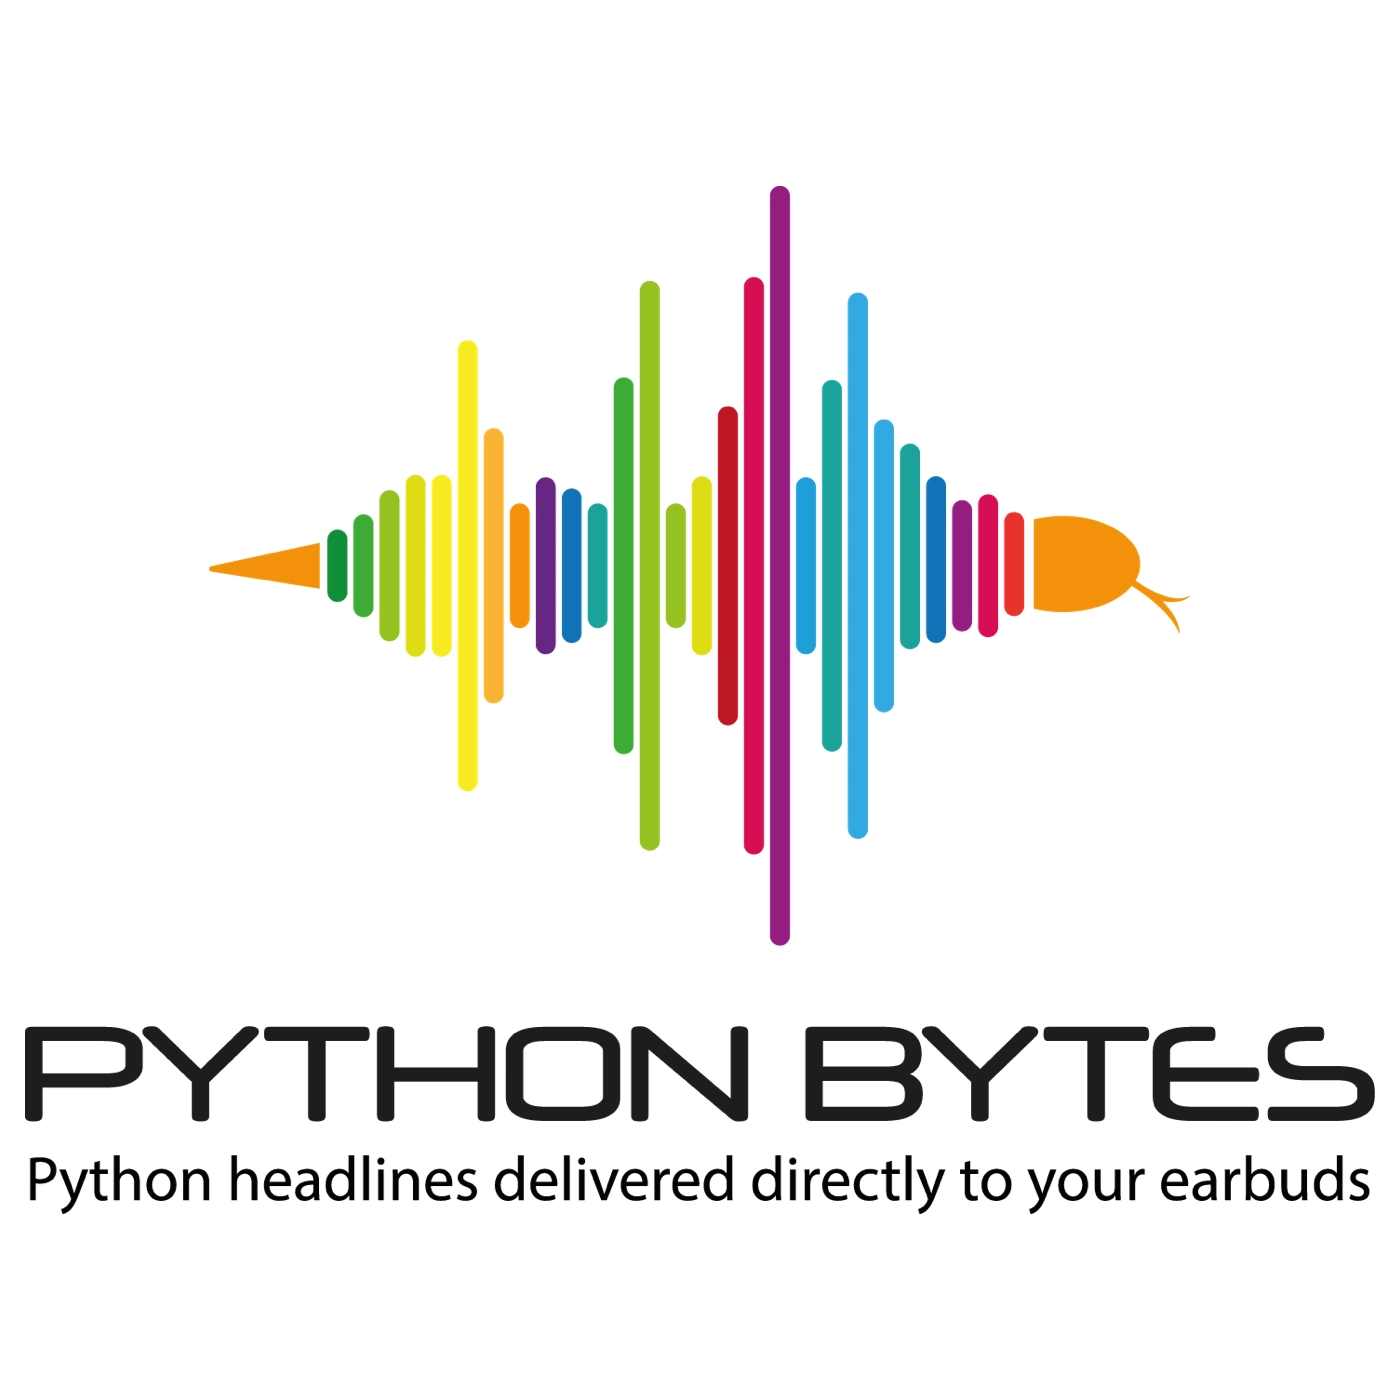 Höre Python Bytes in der App.